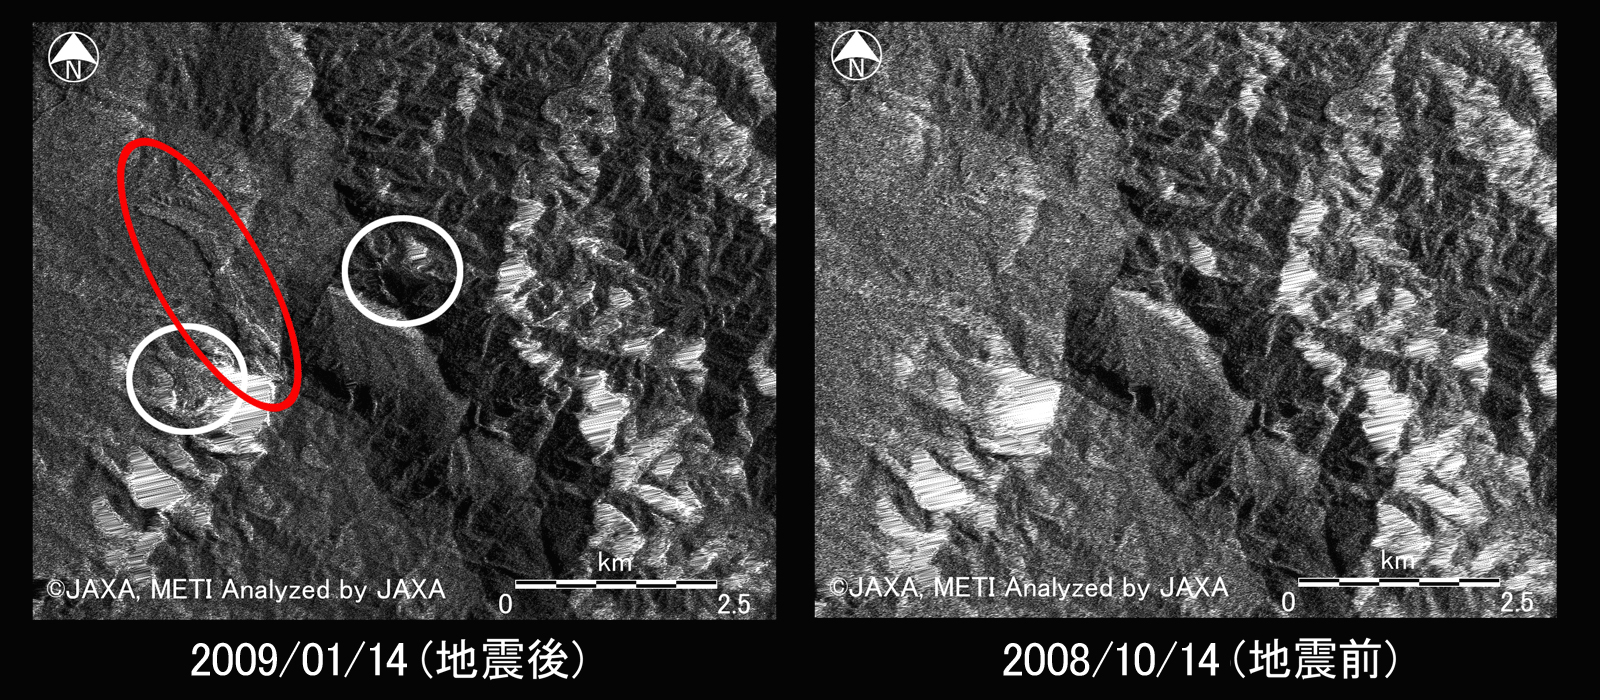 図4左: PALSAR強度画像(地震後)、図4右: PALSAR強度画像(地震前)